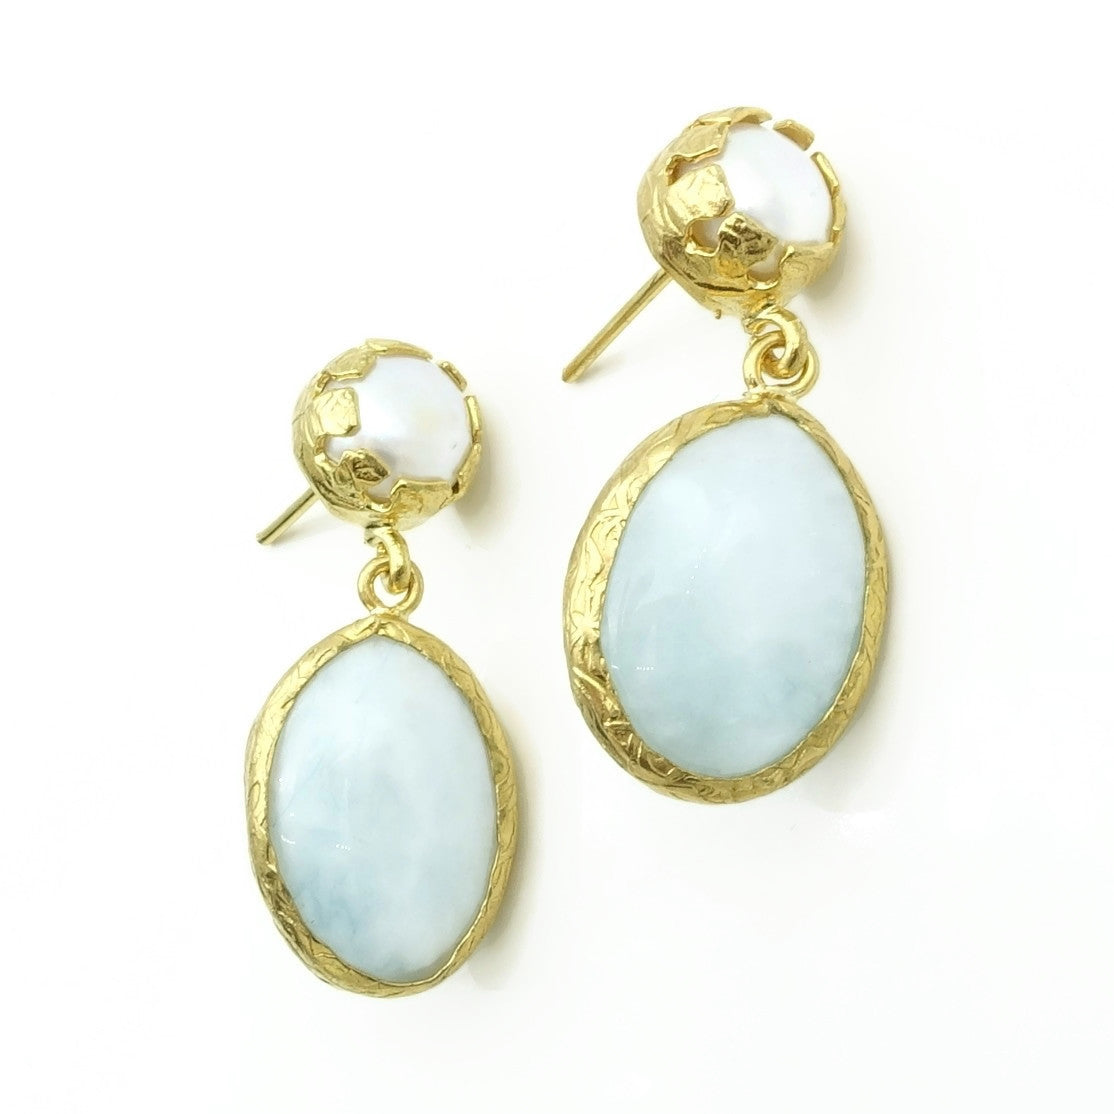 Aylas Pearl Moon stone earrings 21ct Gold plated semi precious gemstone - Handmade